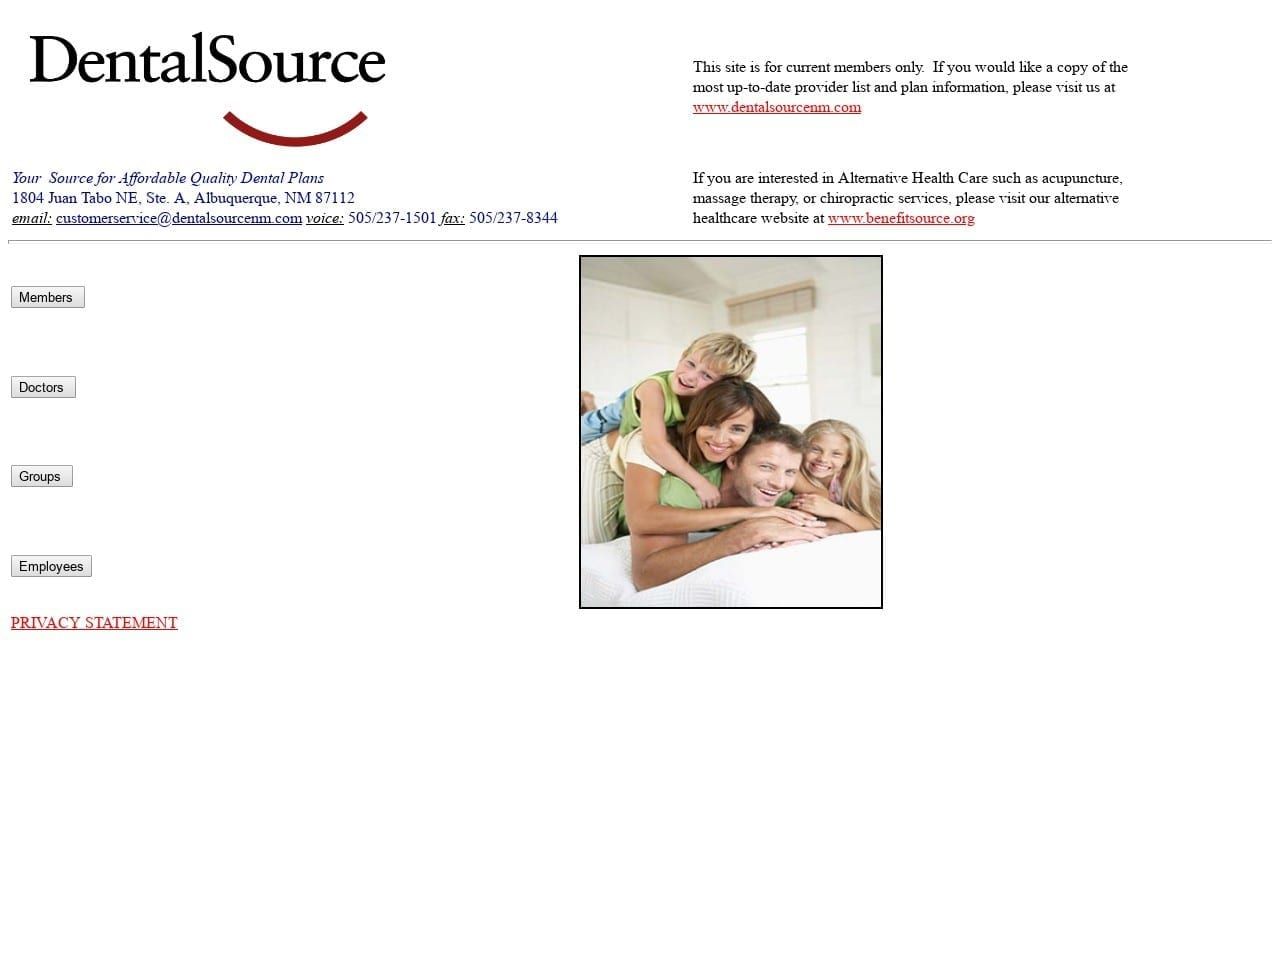 Dental Source Website Screenshot from dentalsource.com